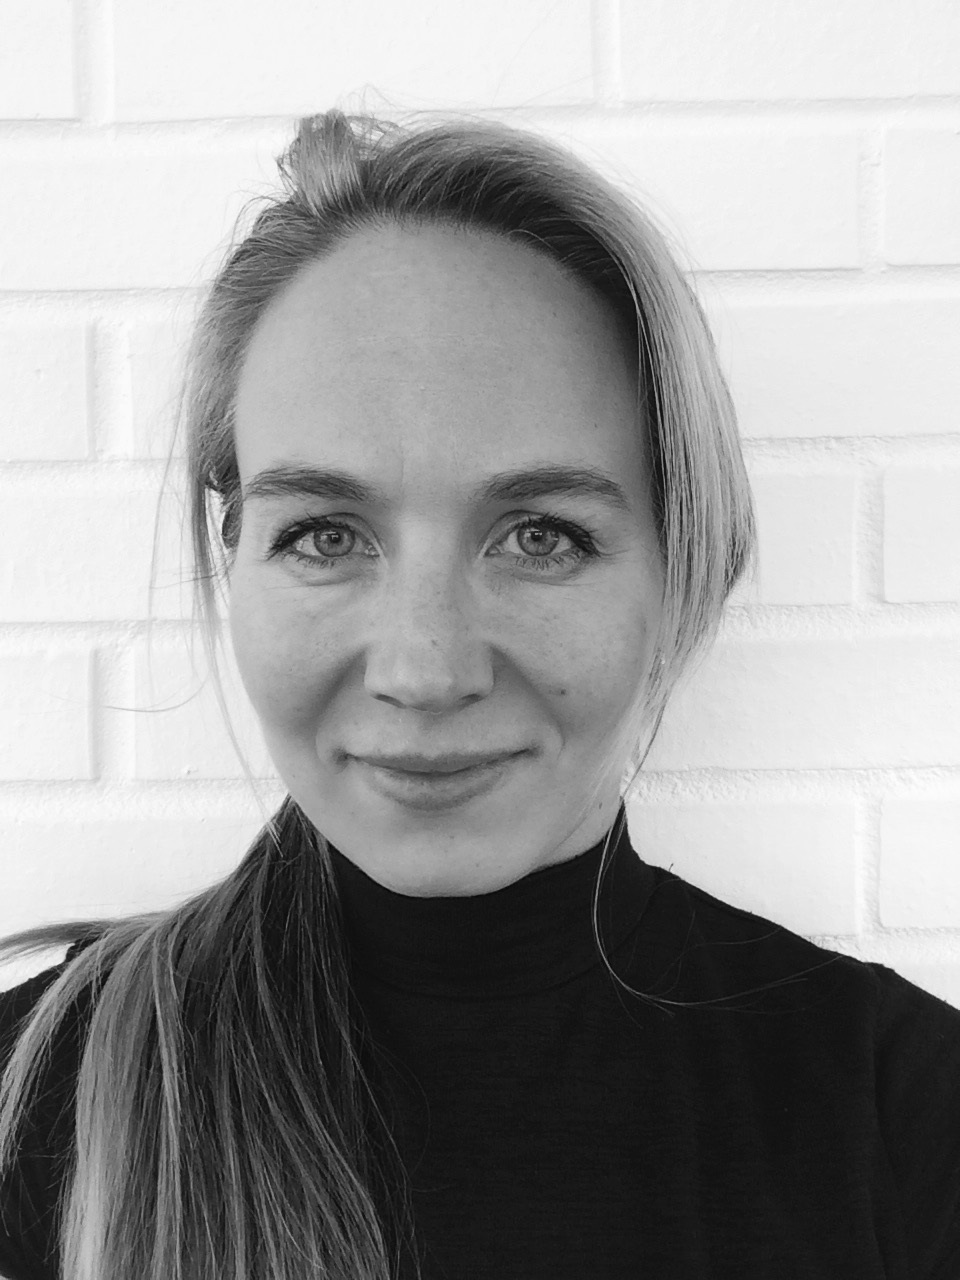 Sigrid Redse Johansen